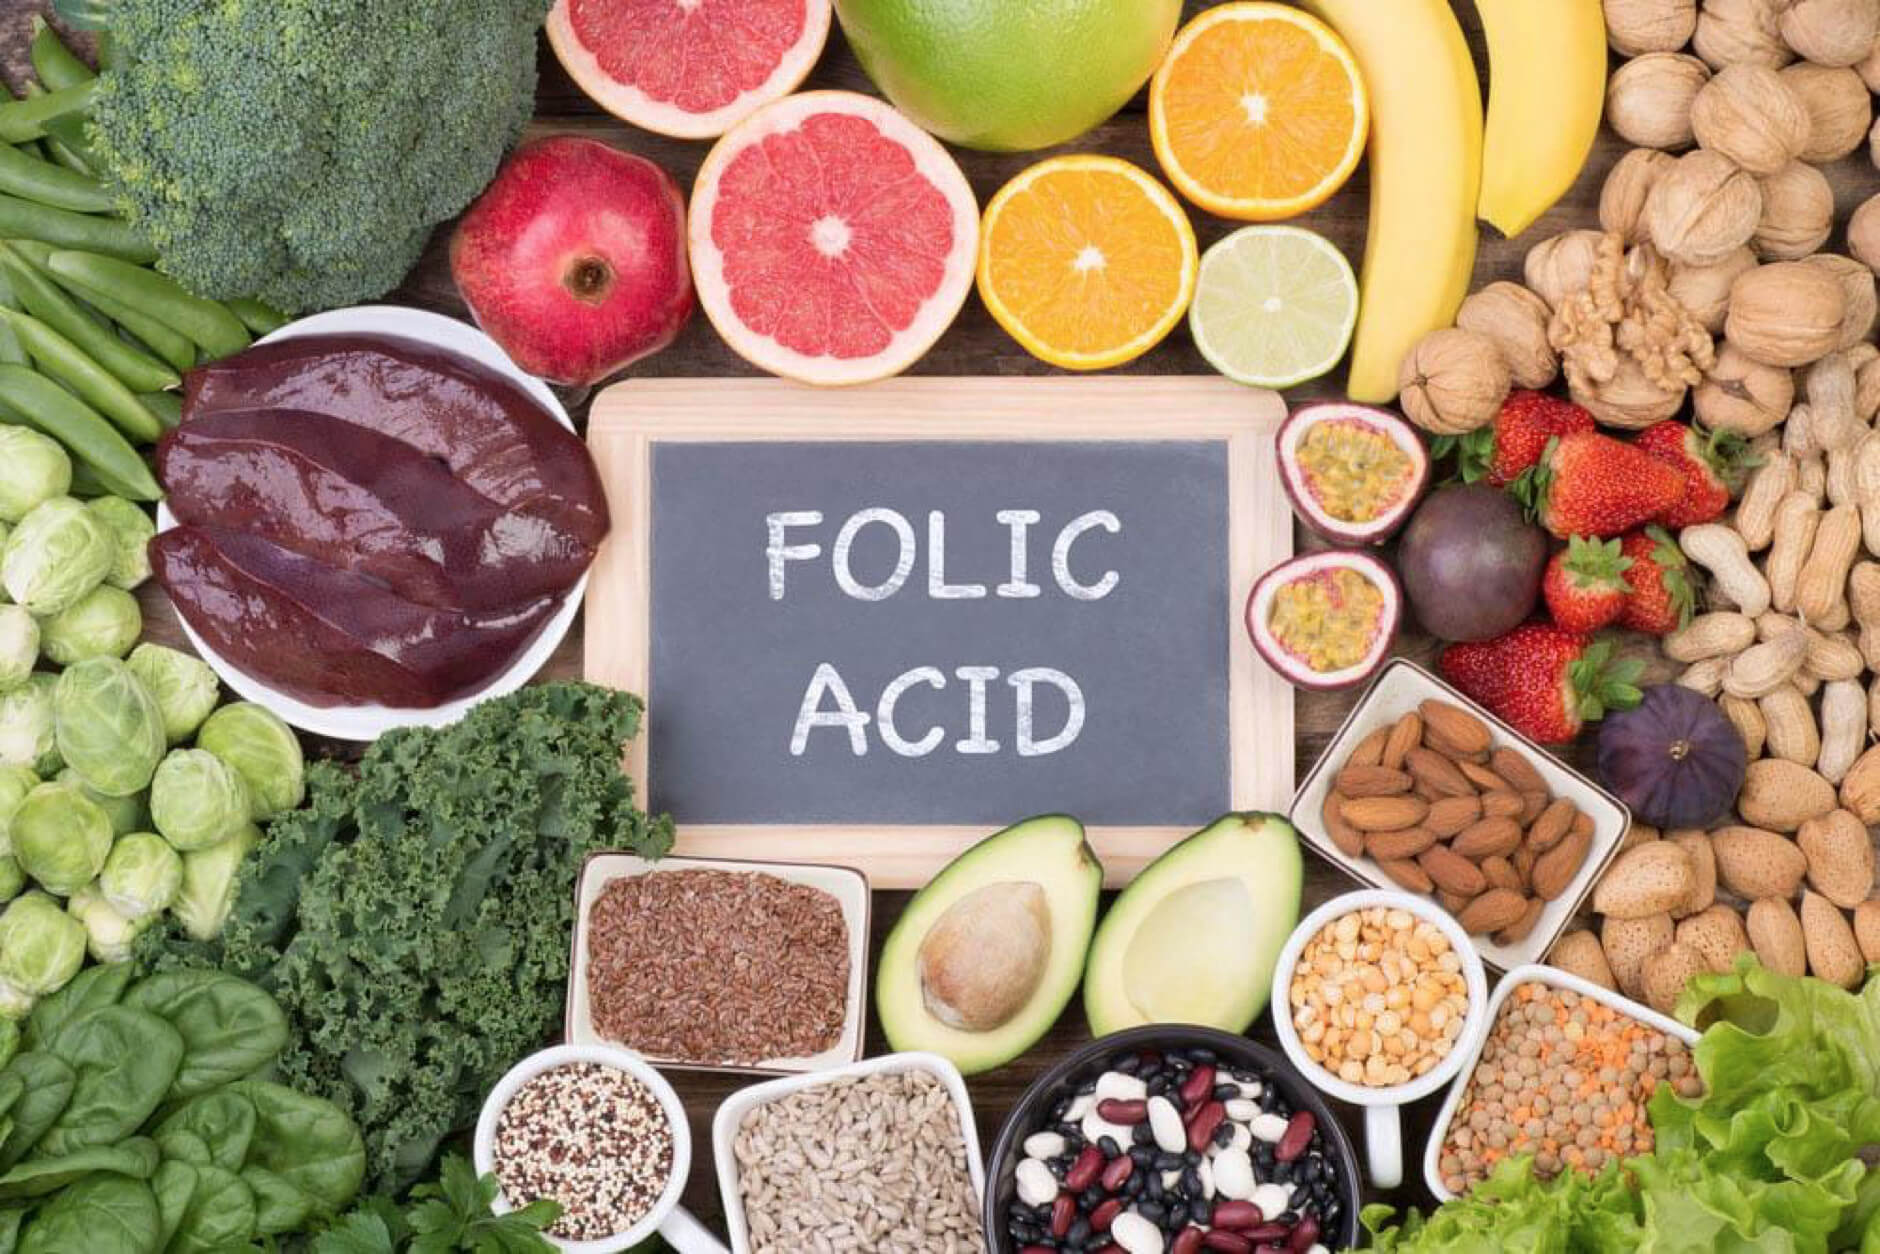 Các món ăn giúp thai nhi tăng cân nhanh từ thực phẩm giàu acid folic